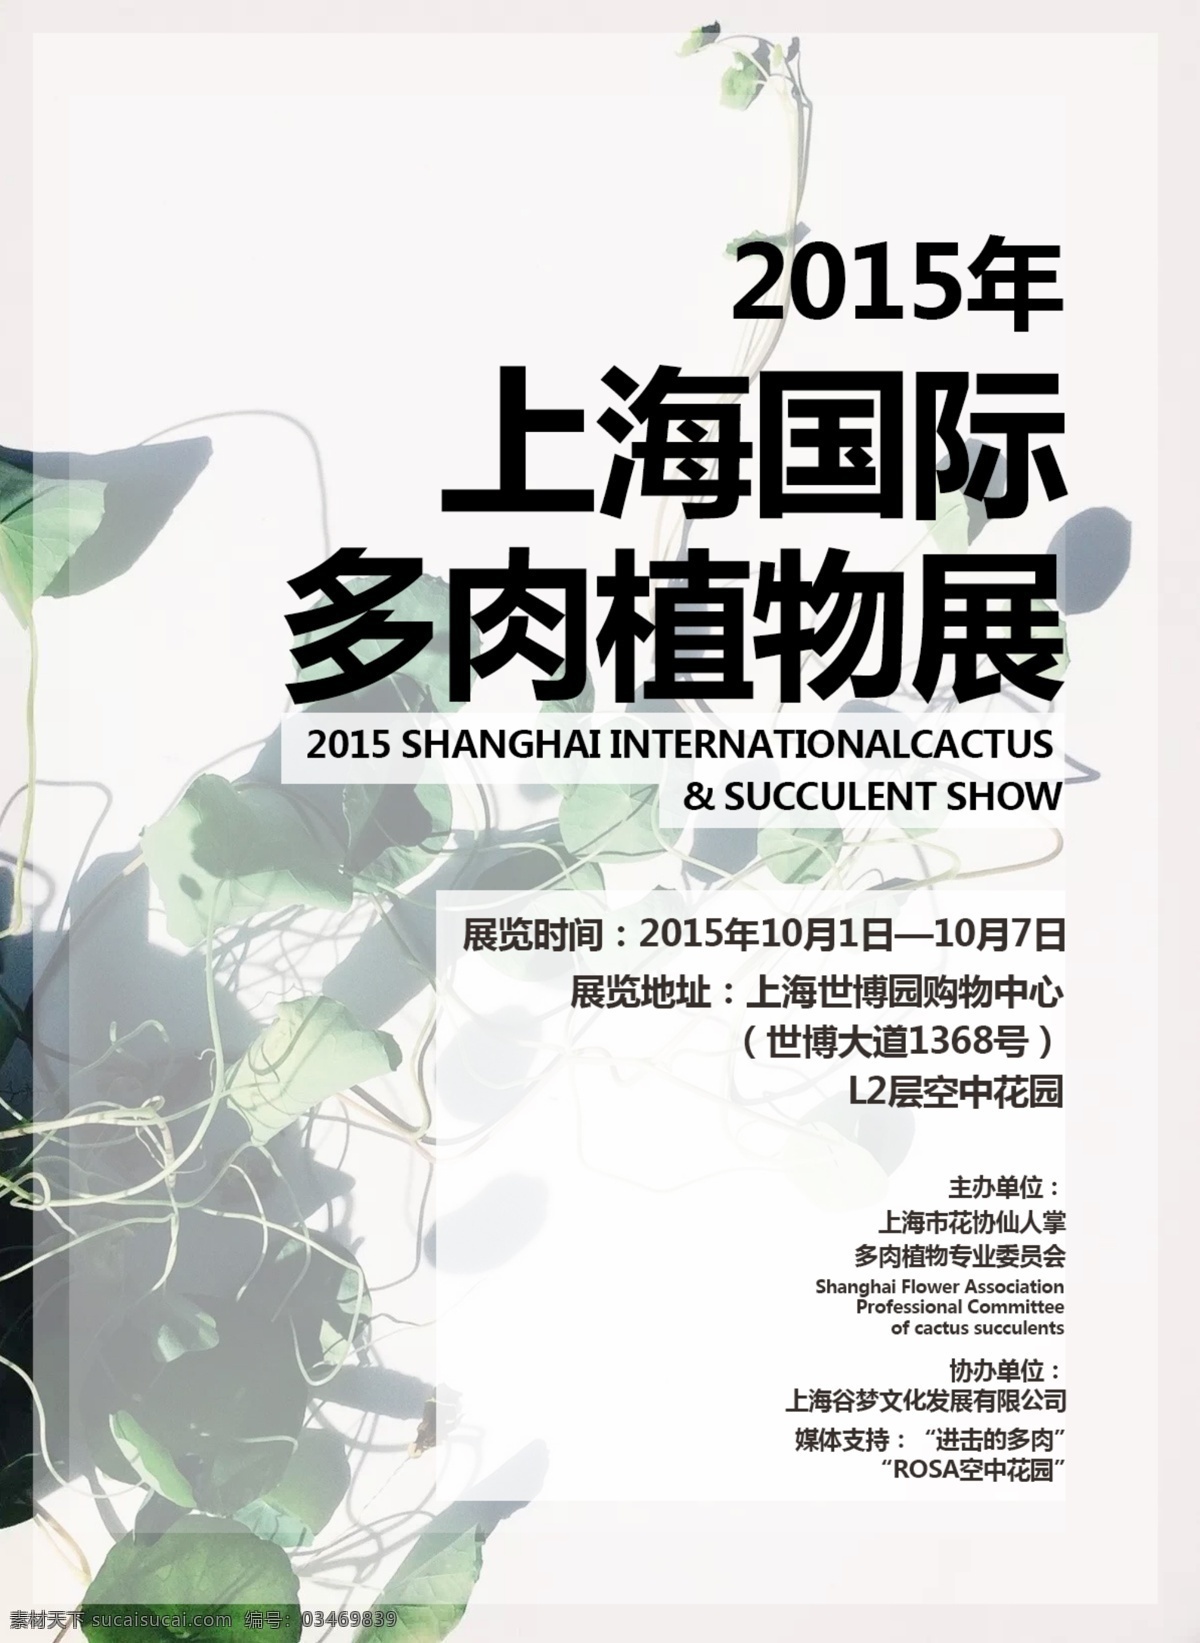 多肉植物展 展览海报 展会海报 植物展览 上海展览